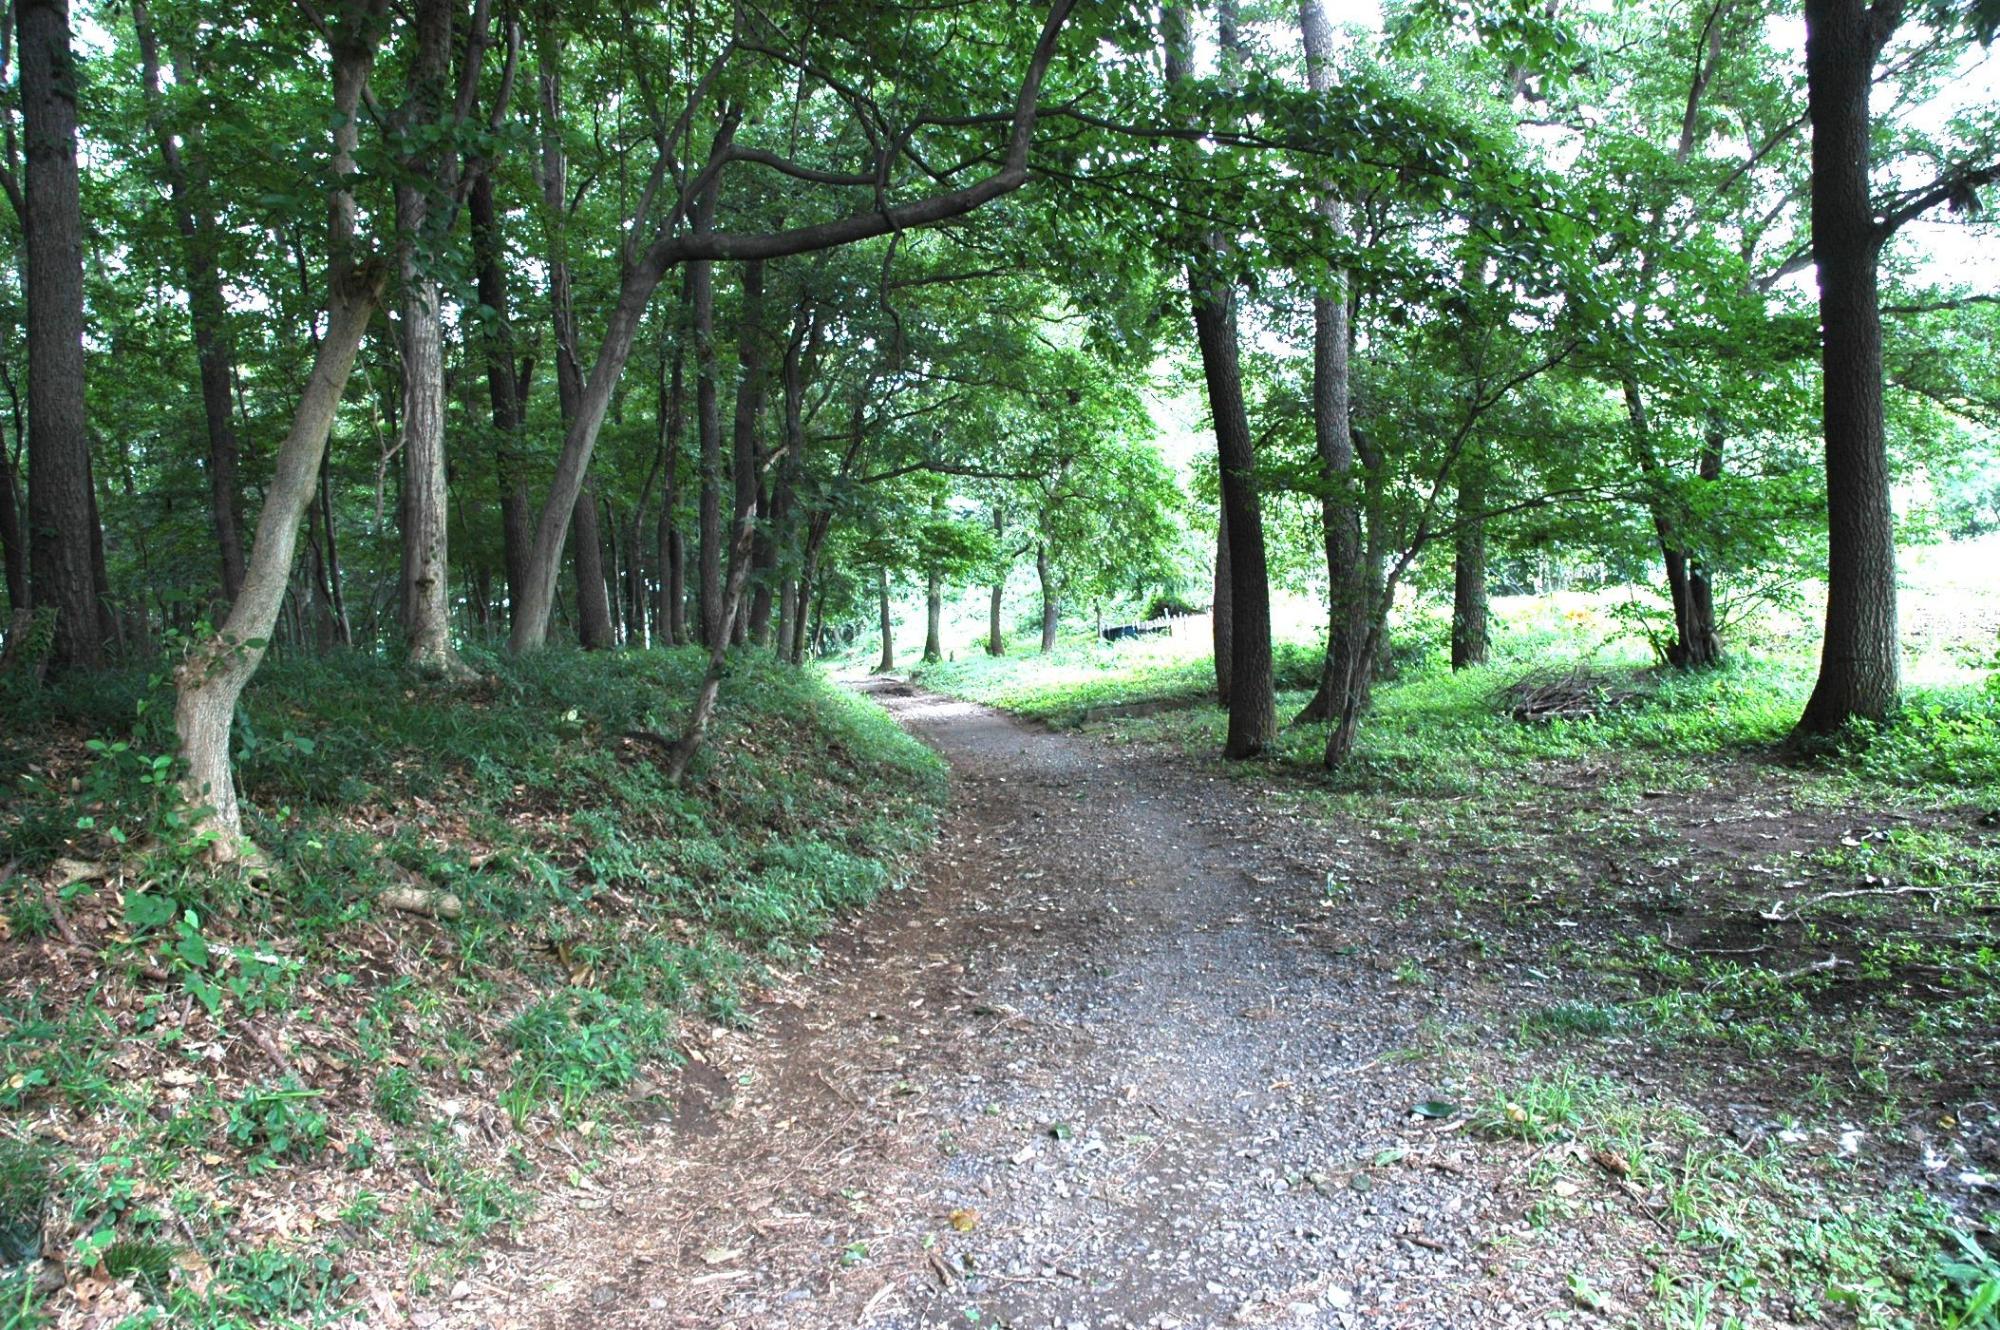 両脇に木々が生えており、舗装されていない砂利道が遠くまで続いている林の中に鎌倉街道の写真